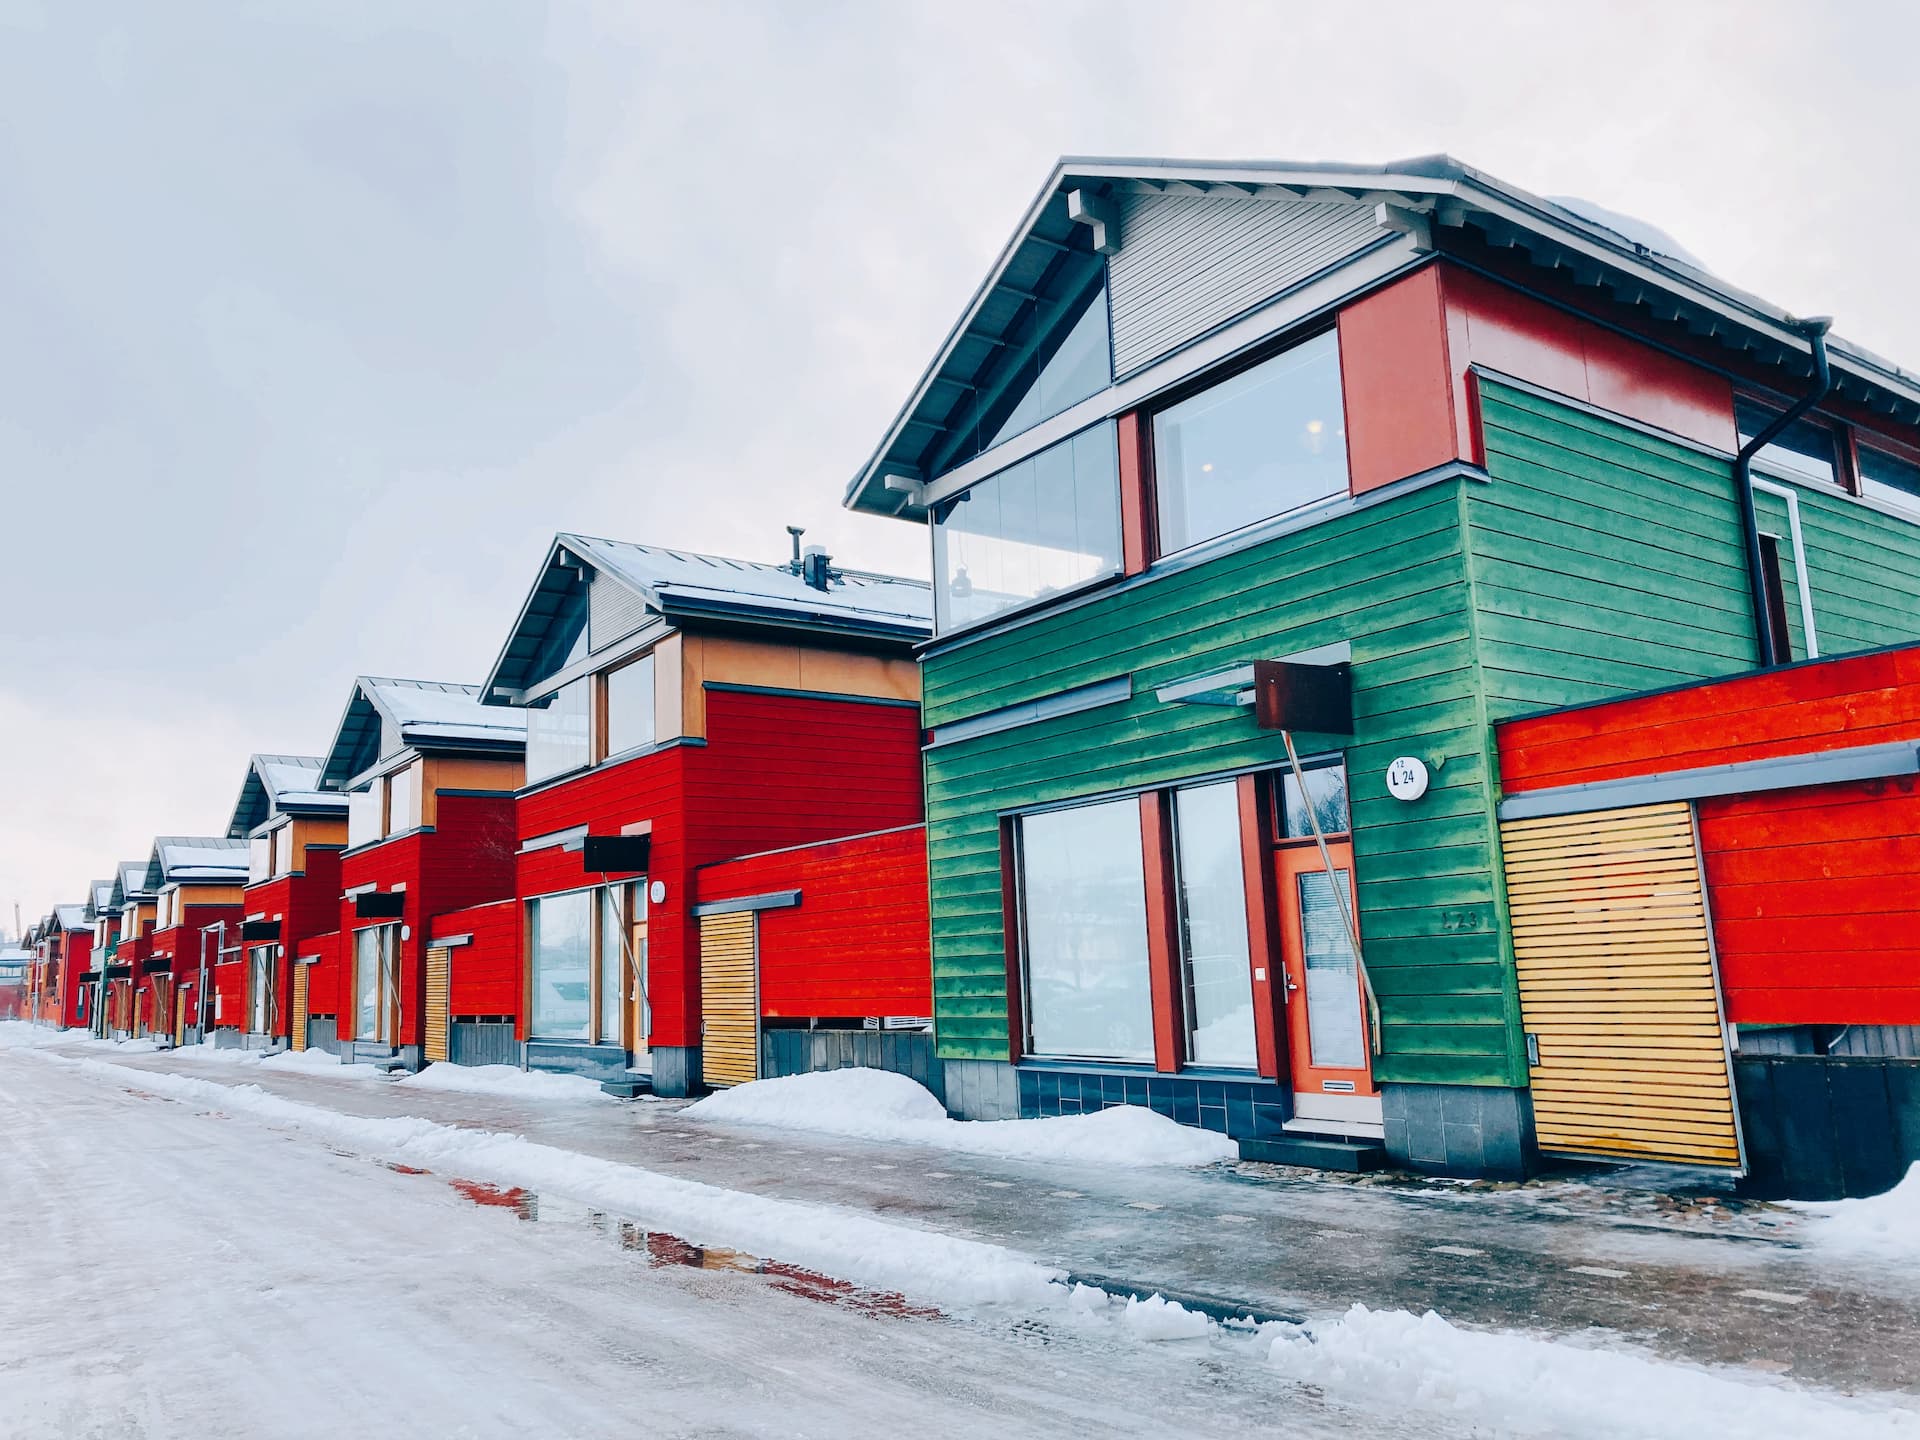 A soli 50 km da Helsinki, Porvoo è una cittadina in cui sono ancora molto diffuse le case costruite interamente in legno - Foto di Fang-Yuan Chuang / Unsplash